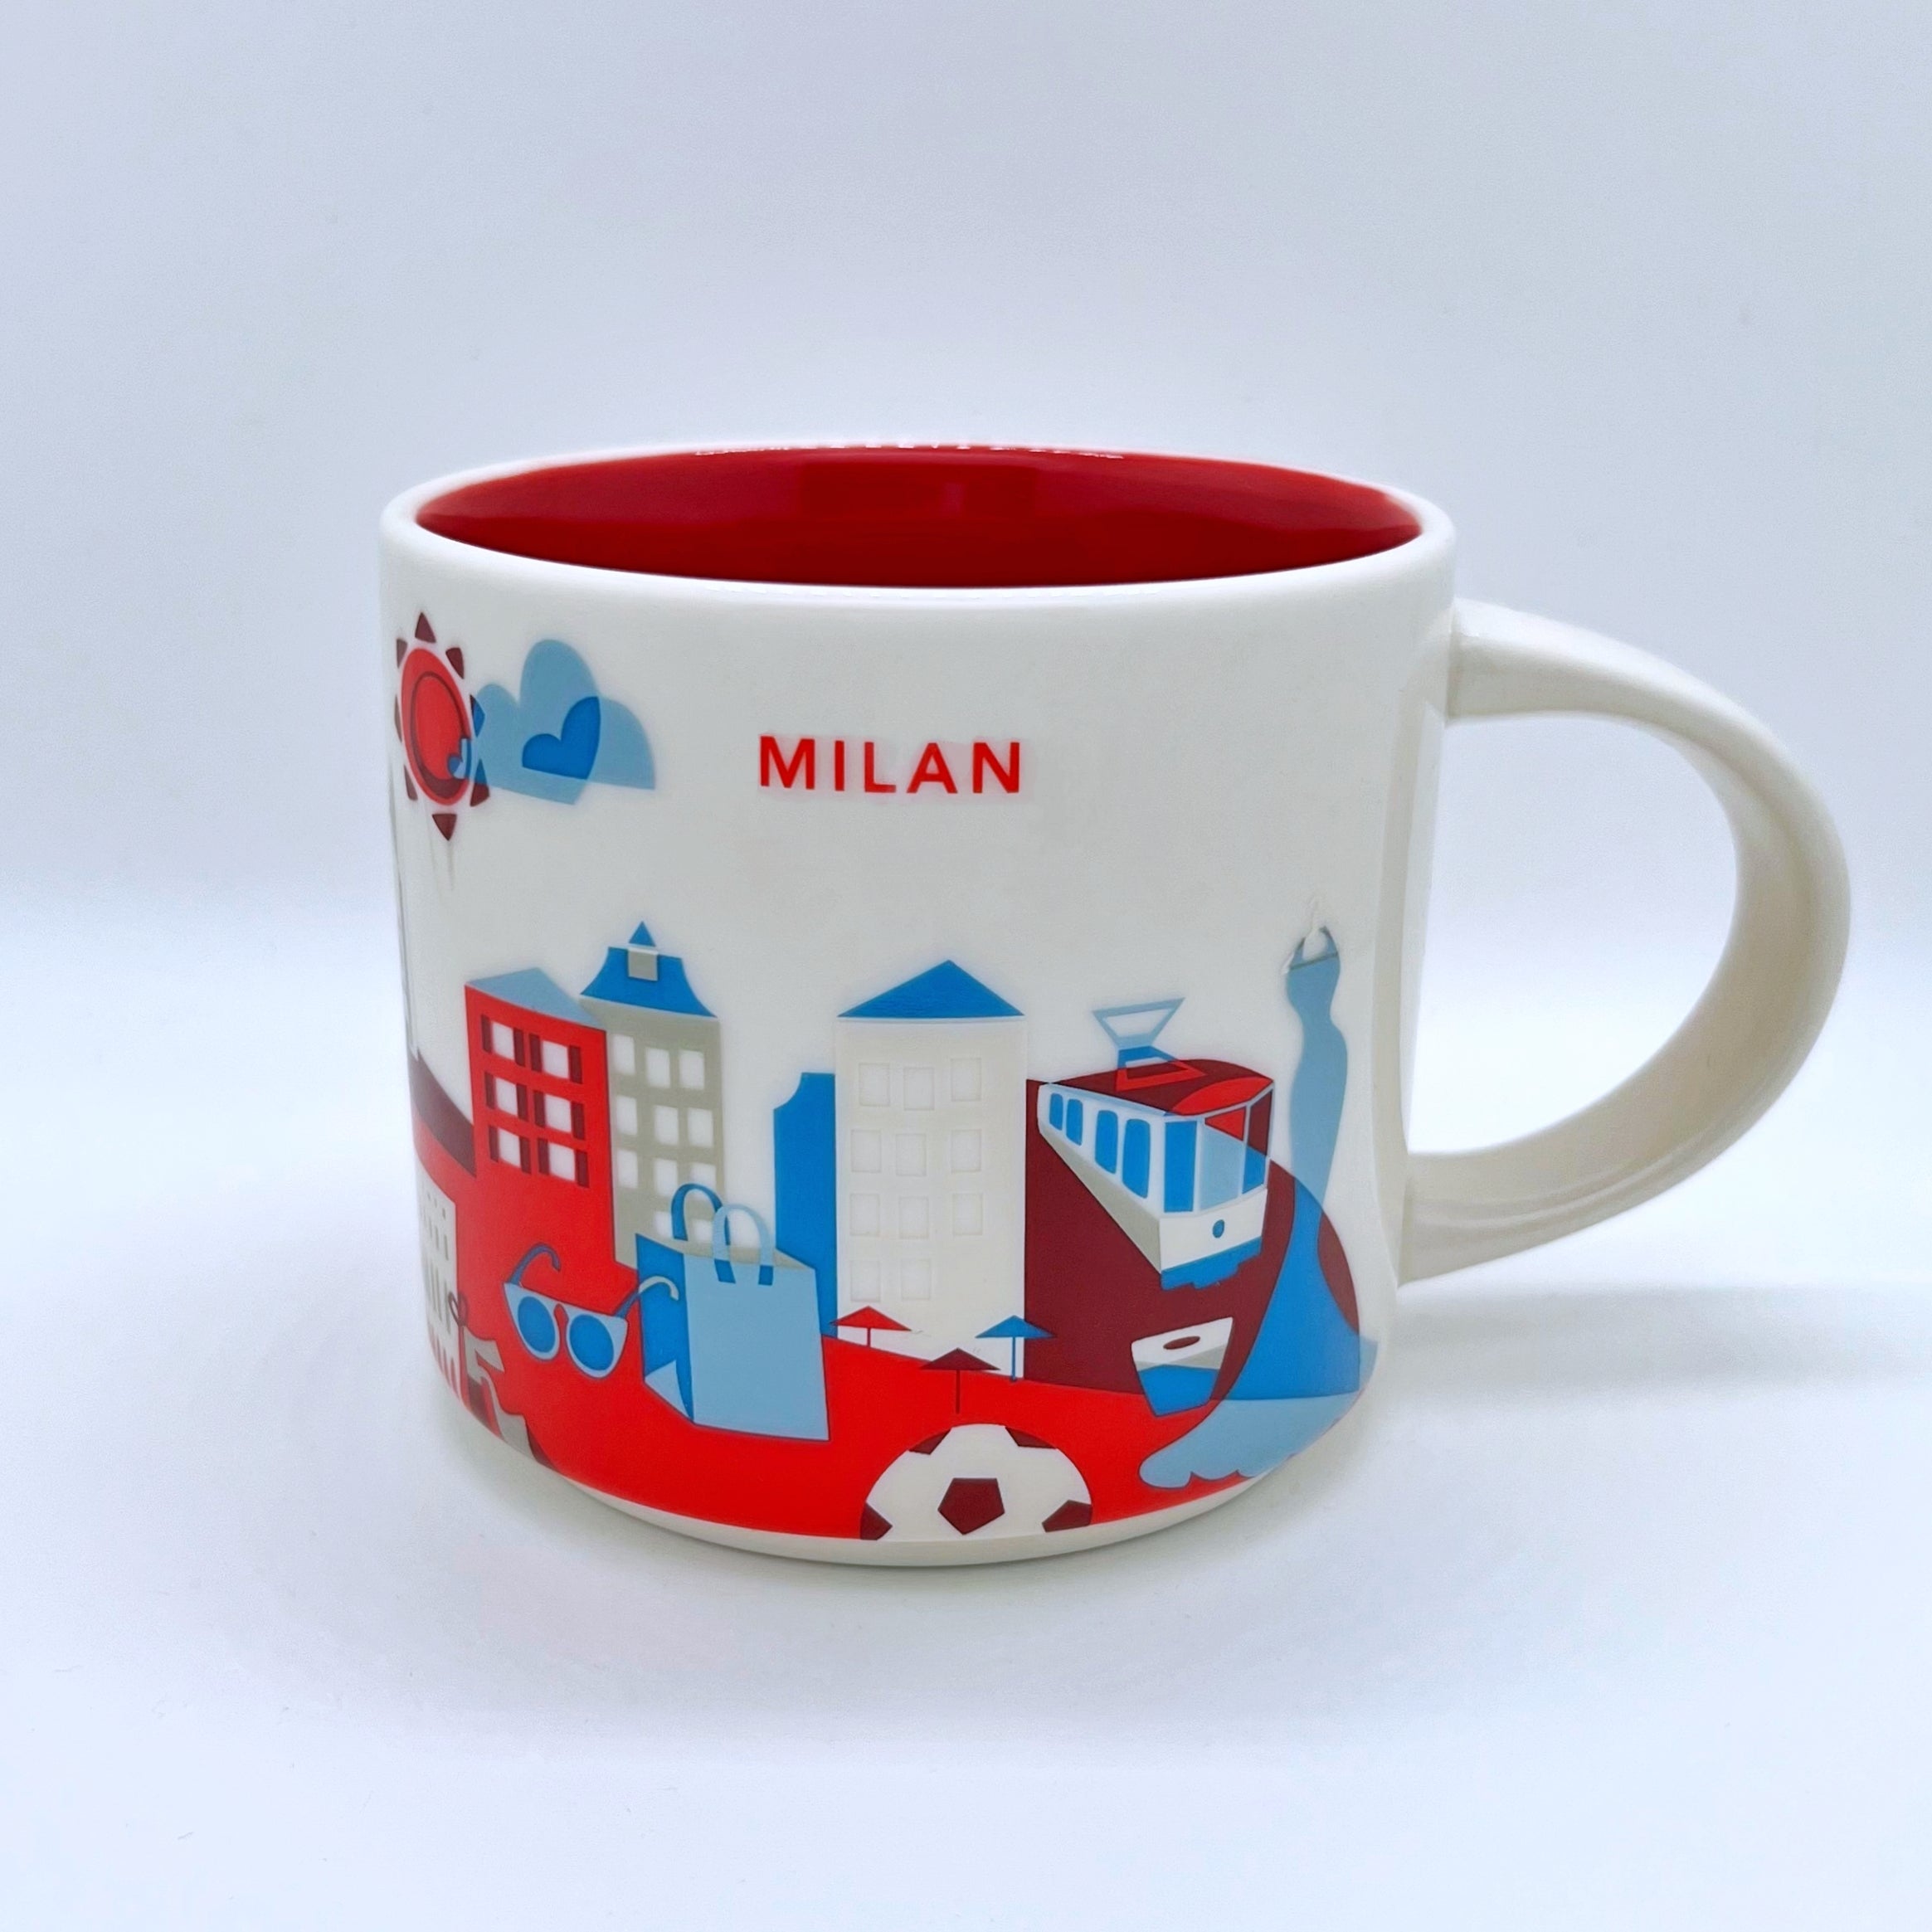 Kaffee Tee und Cappuccino Tasse von Starbucks mit gemalten Bildern aus der Stadt Mailand